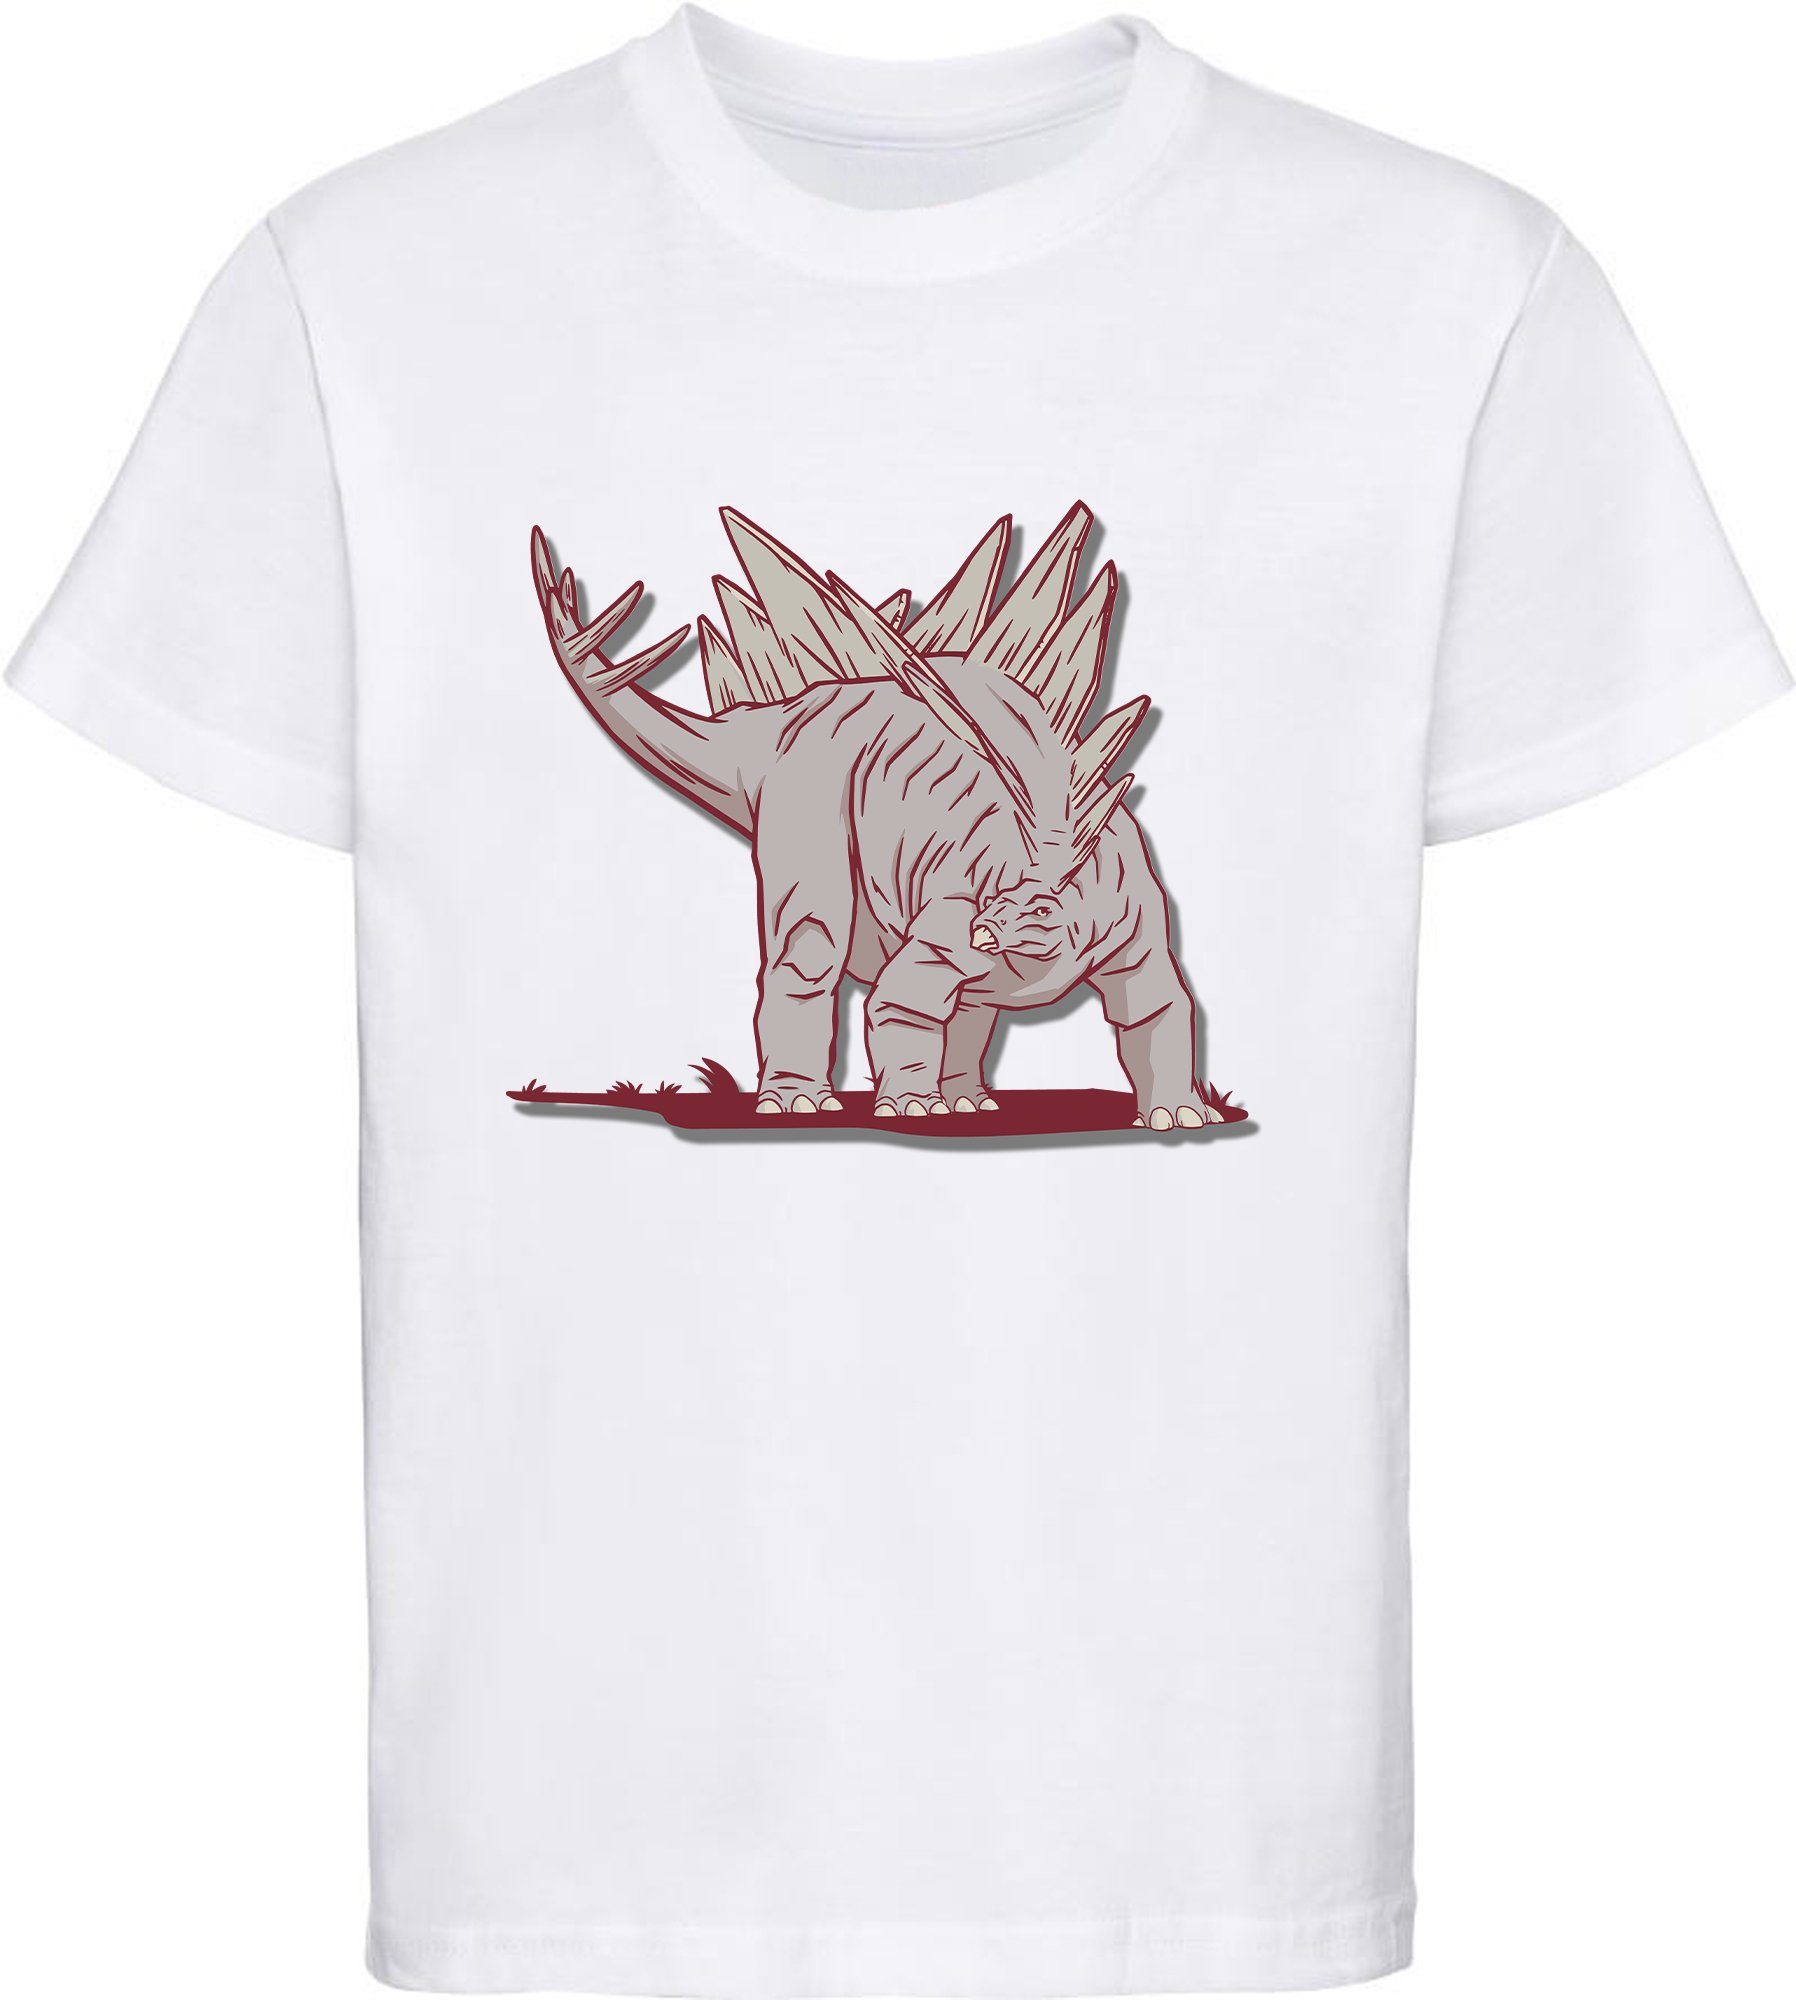 MyDesign24 Print-Shirt bedrucktes Kinder T-Shirt mit Stegosaurus Baumwollshirt mit Dino, schwarz, weiß, rot, blau, i88 weiss